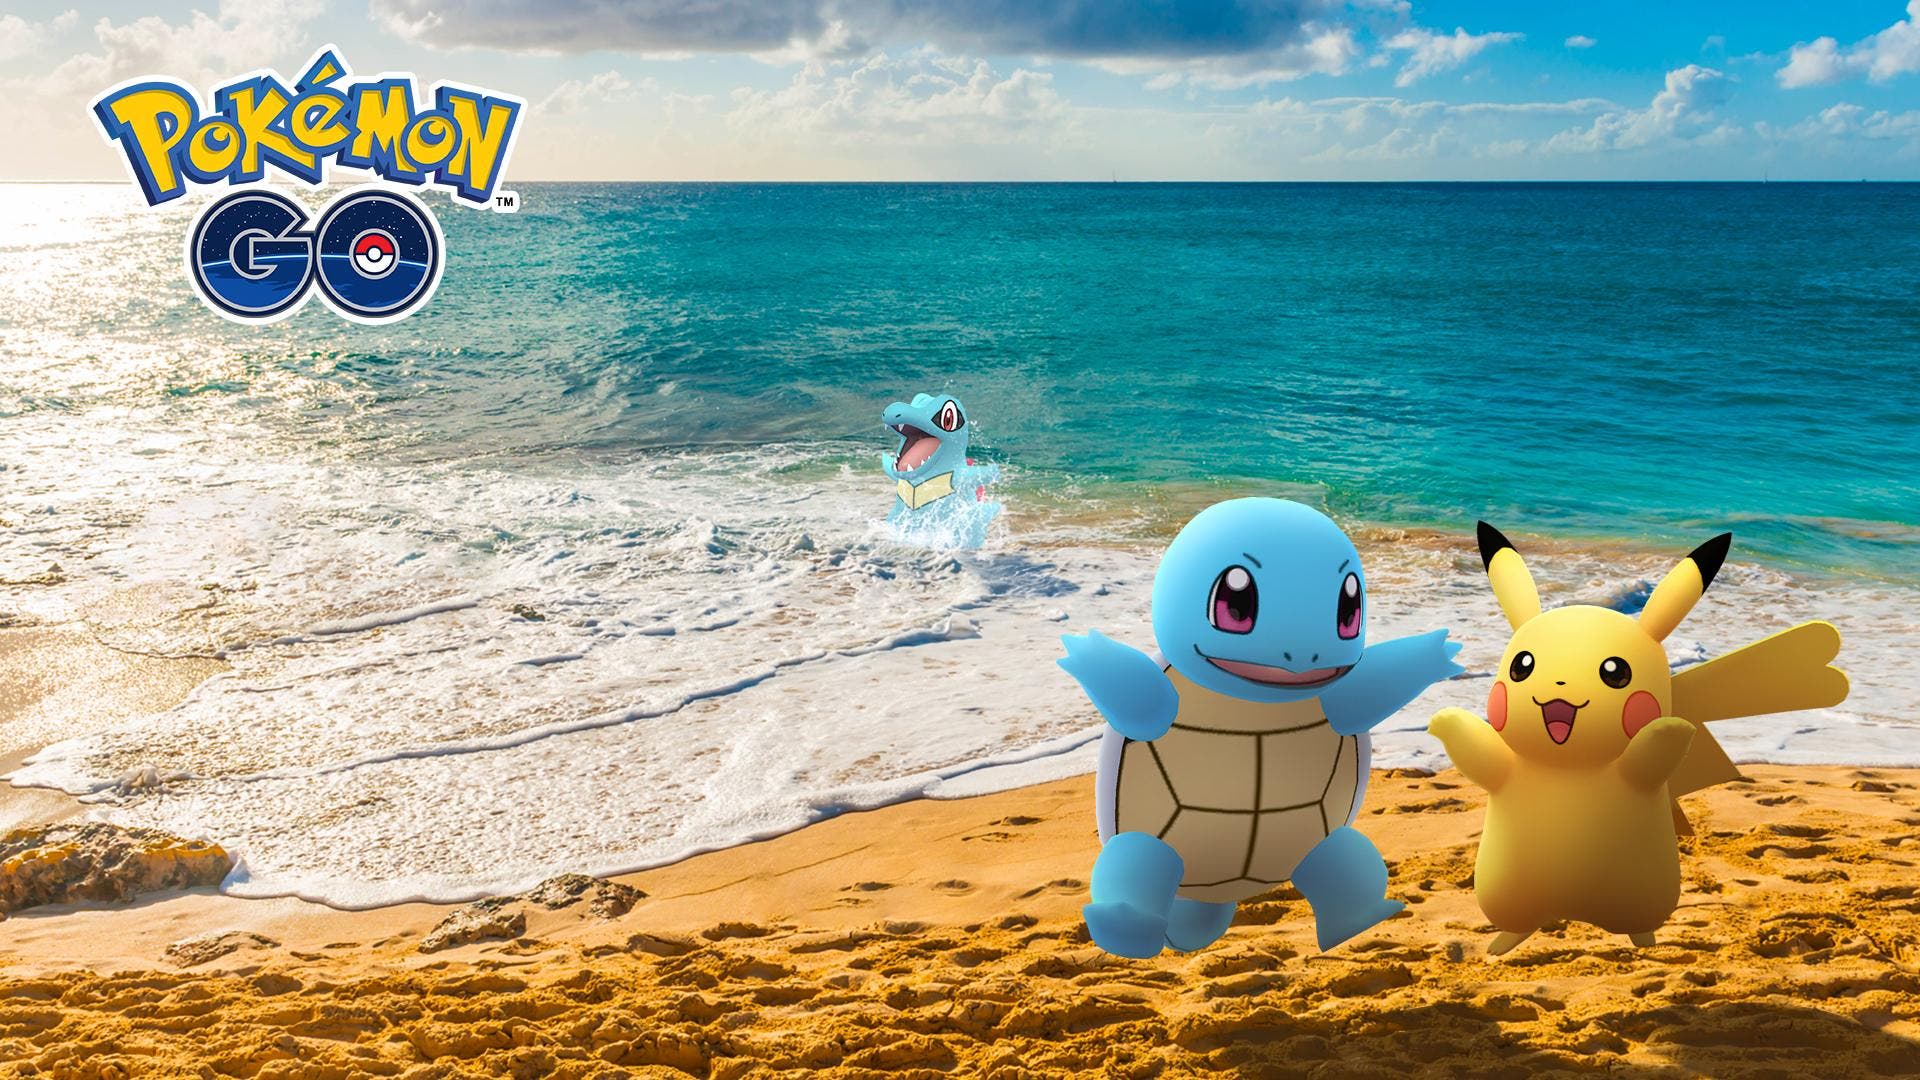 El evento 12 días de amistad arranca hoy en Pokémon GO: todos los detalles